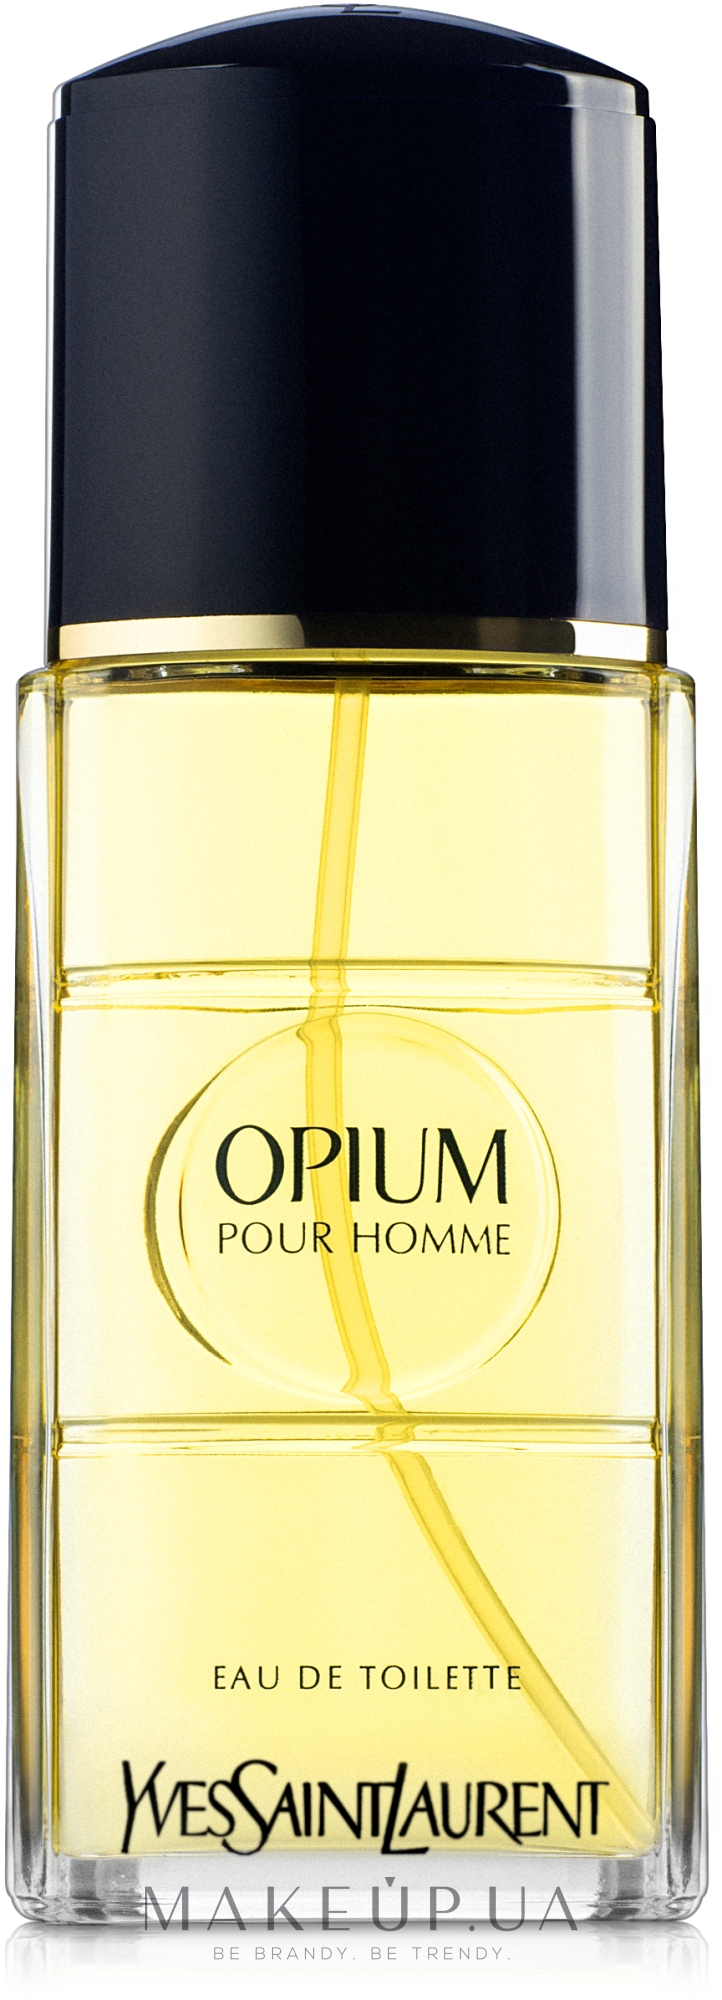 Opium pour homme. Yves Saint Laurent Opium pour homme. Yves Saint Laurent духи мужские. Yves Saint Laurent туалетная вода Opium pour homme от 2010 года. Духи Ив сен Лоран мужские хом.